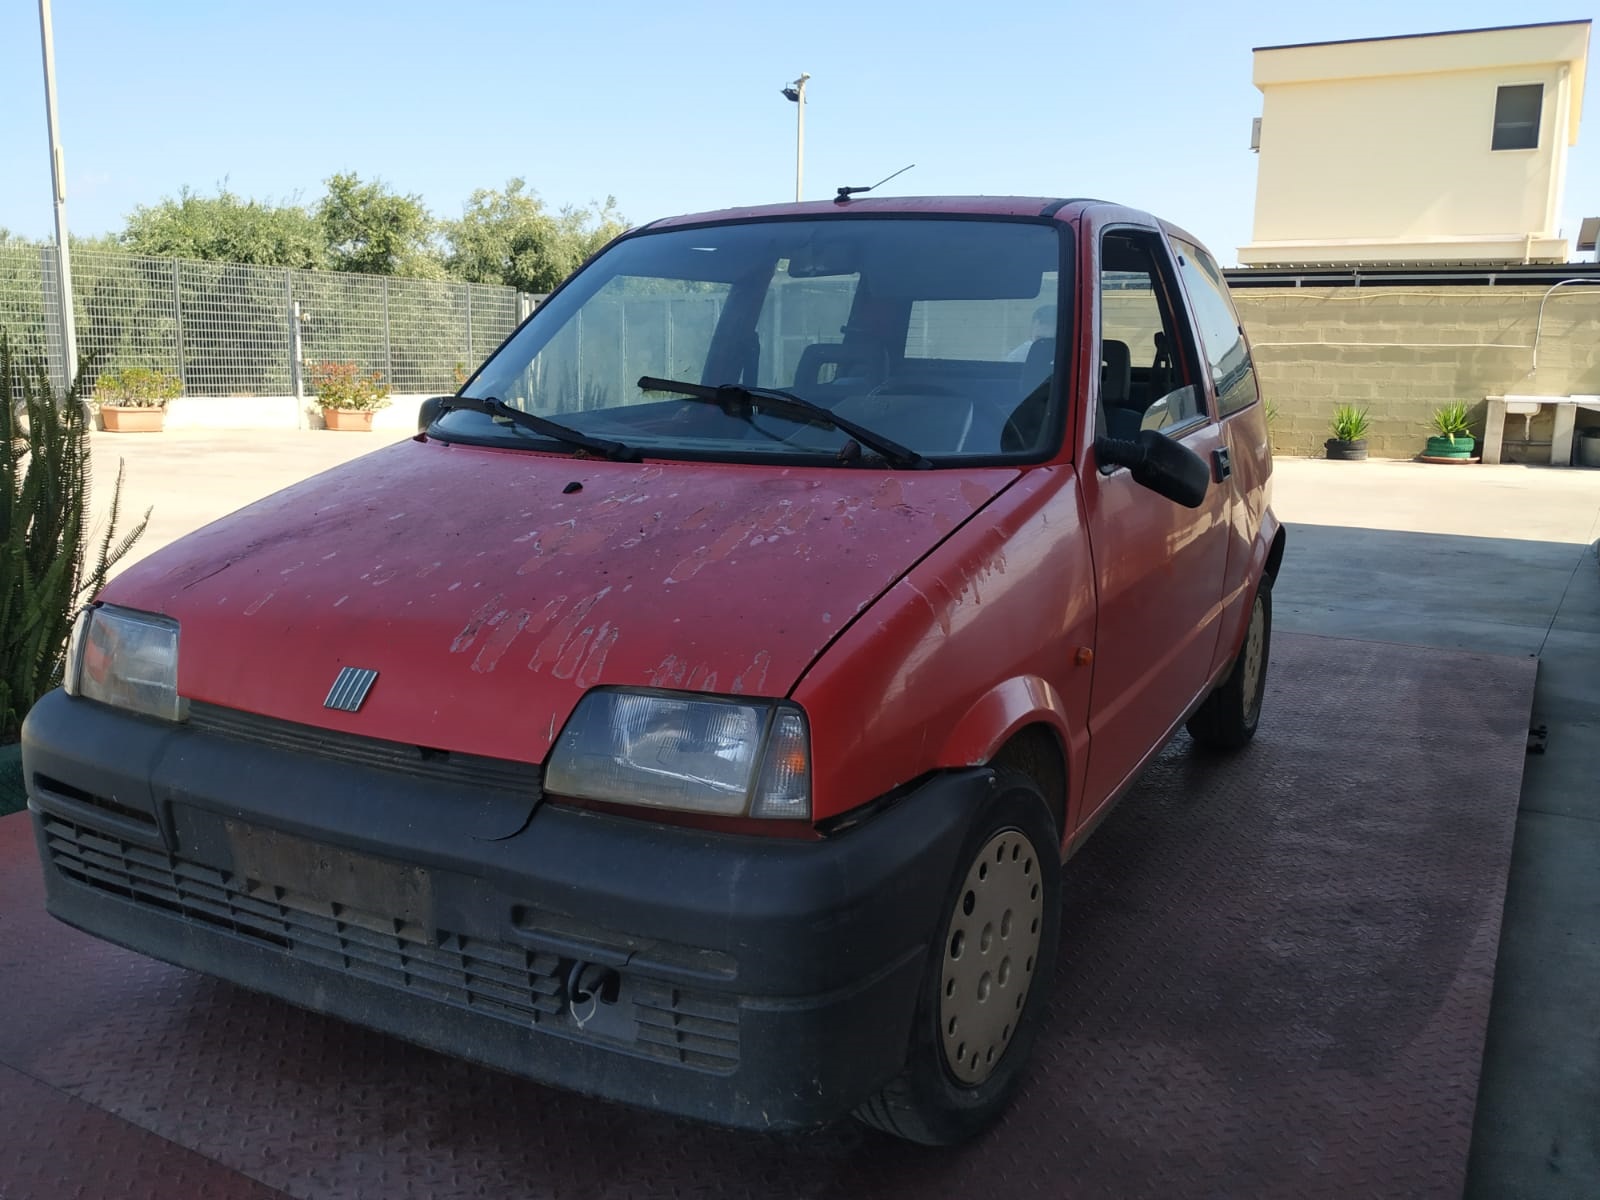 Al momento stai visualizzando Fiat 500 del 1995 disponibile nel nostro autoparco di demolizione per la vendita dei ricambi usati. Info solo telefonando al 348 5846422. Universal Car di Nicola Ladisa.